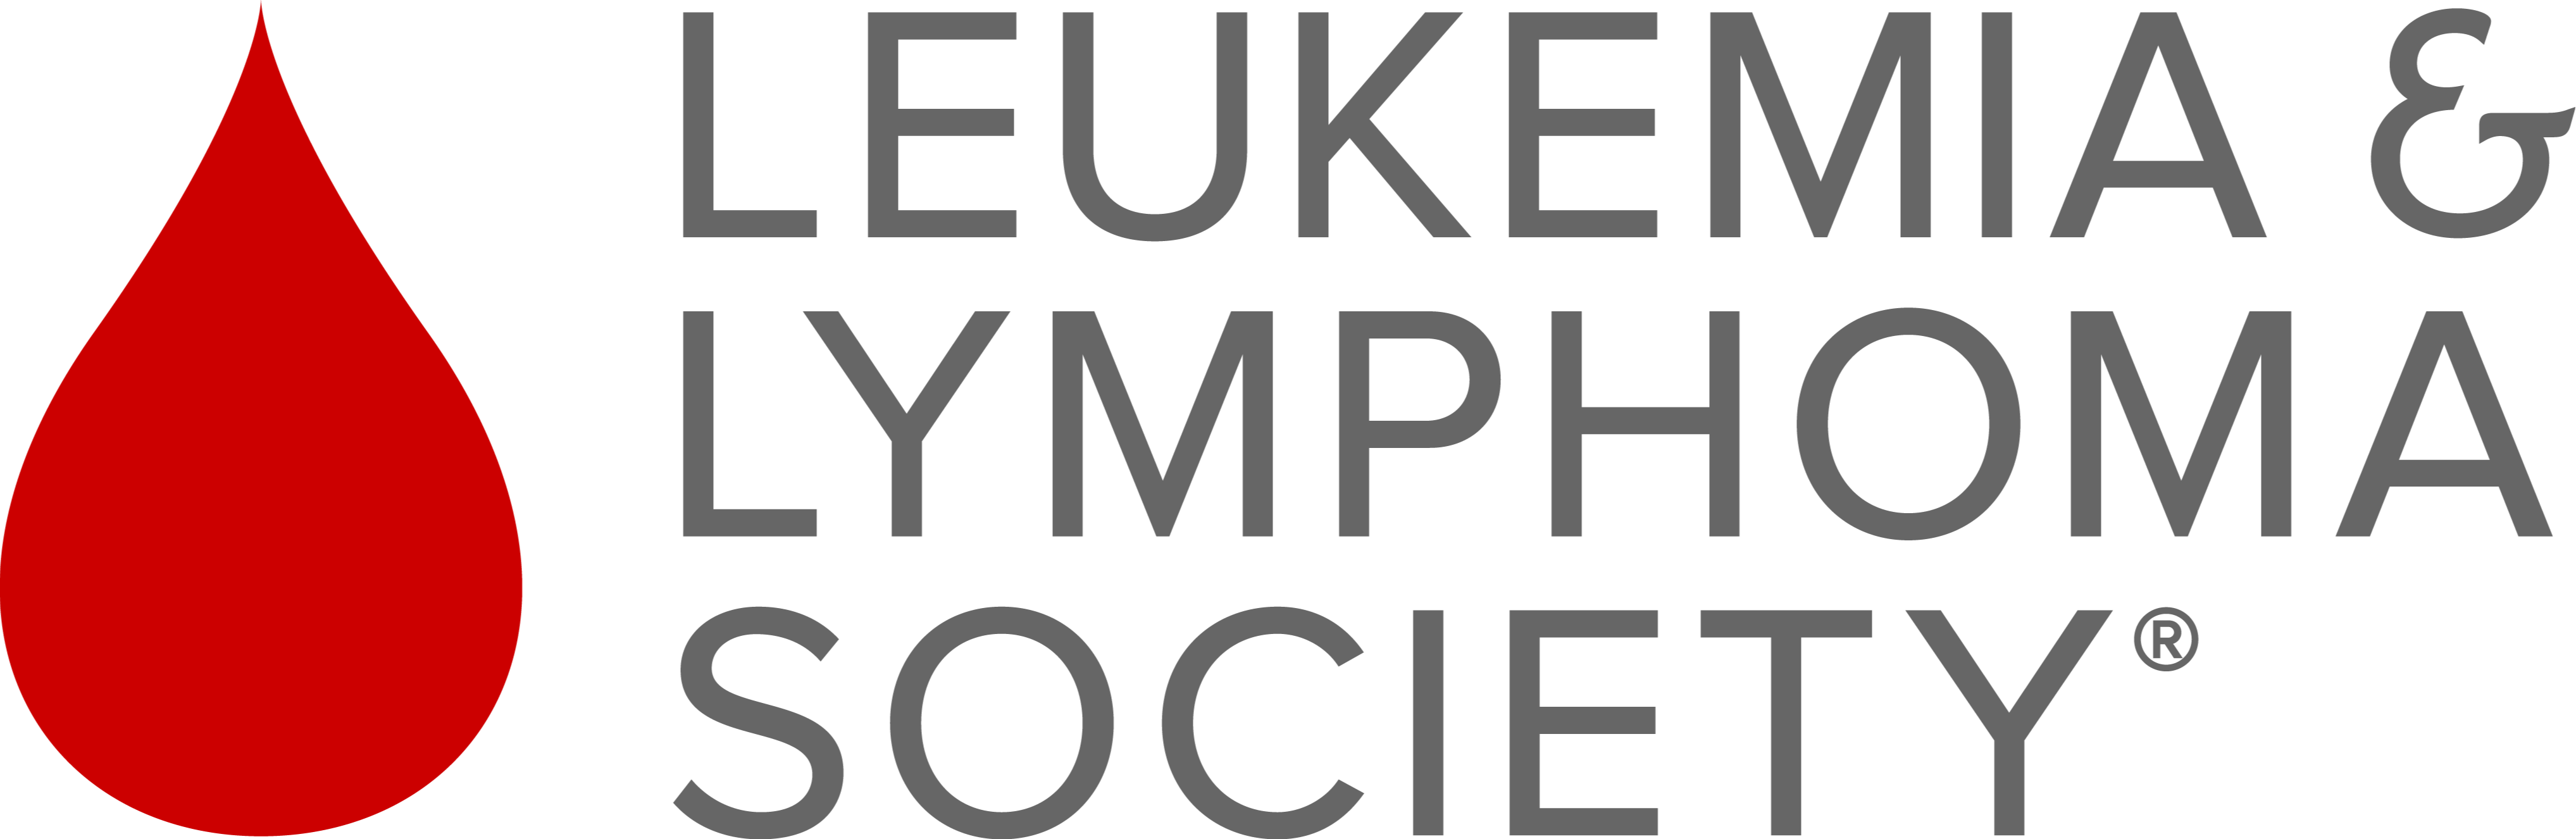 The Leukemia & Lymphoma Society Illinois Chapter Idealist